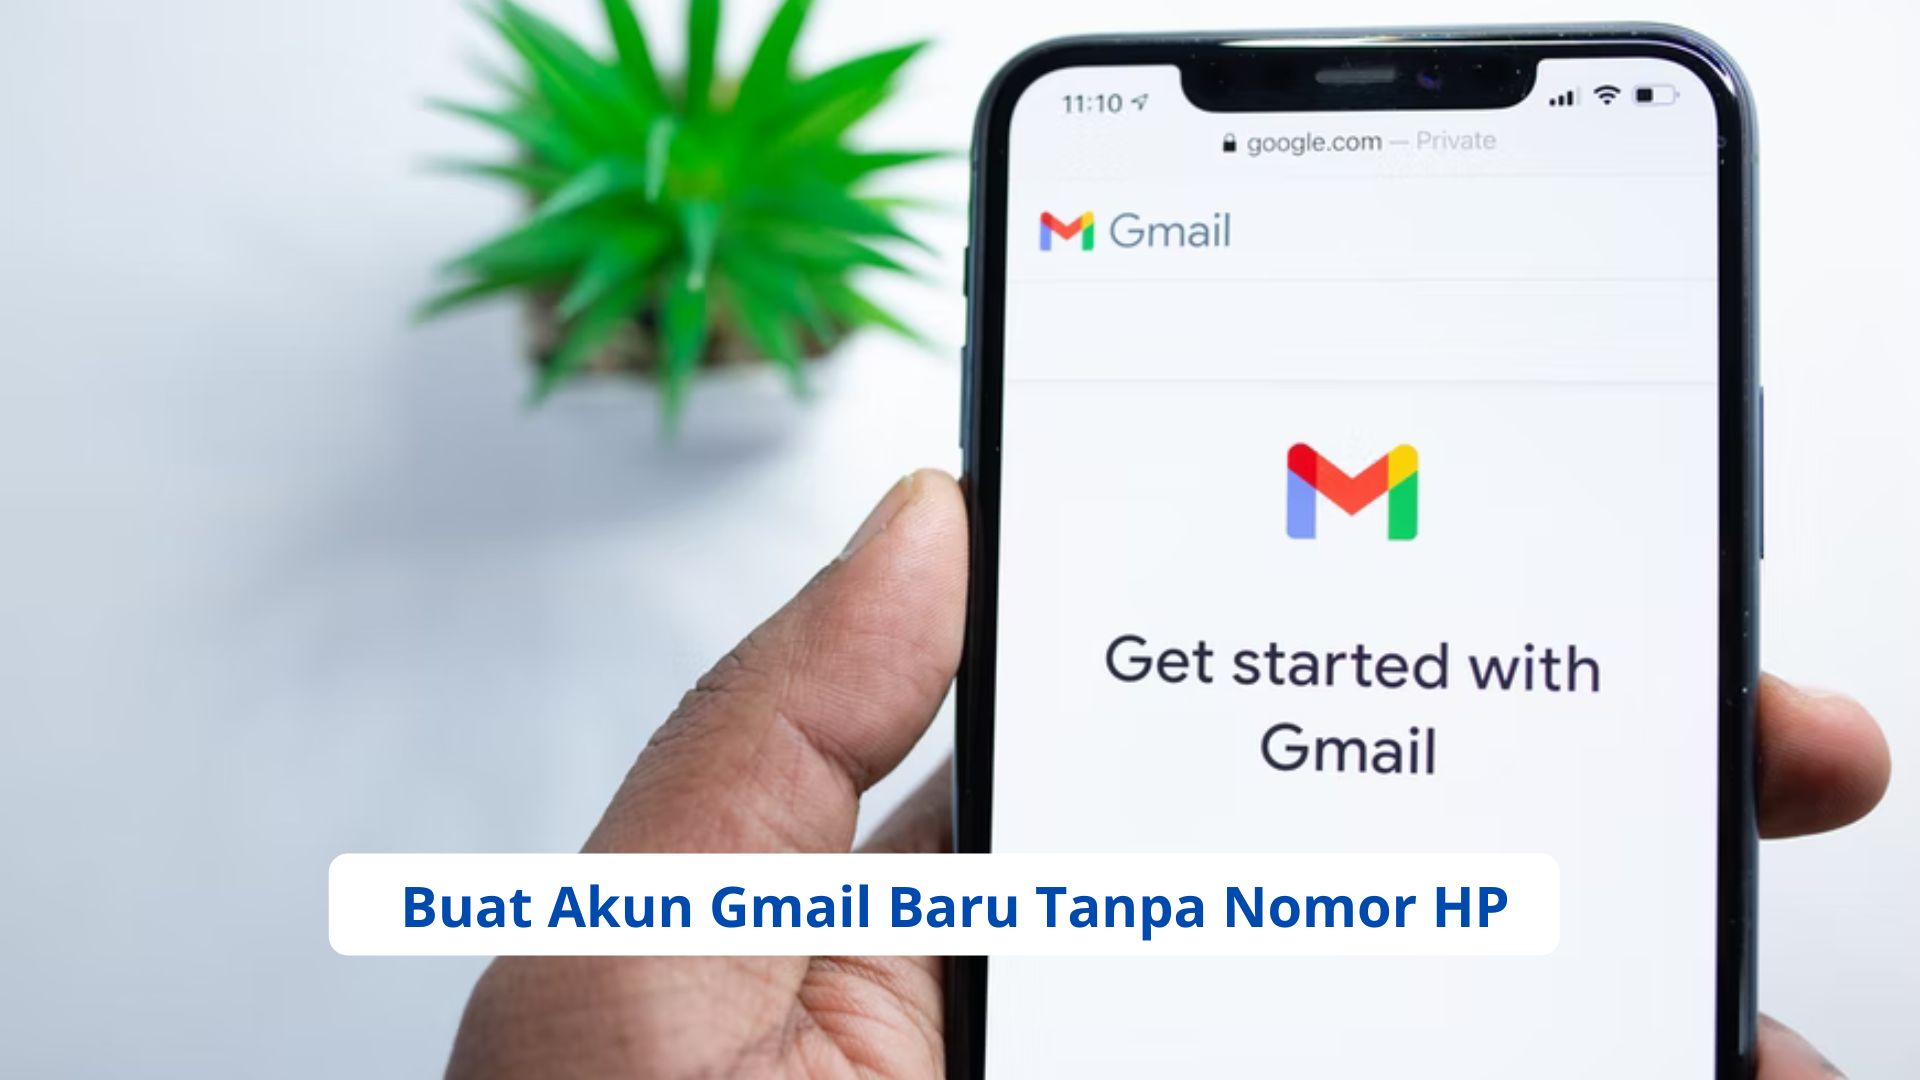 Cara Buat Akun Gmail Baru Tanpa Nomor HP dengan Mudah